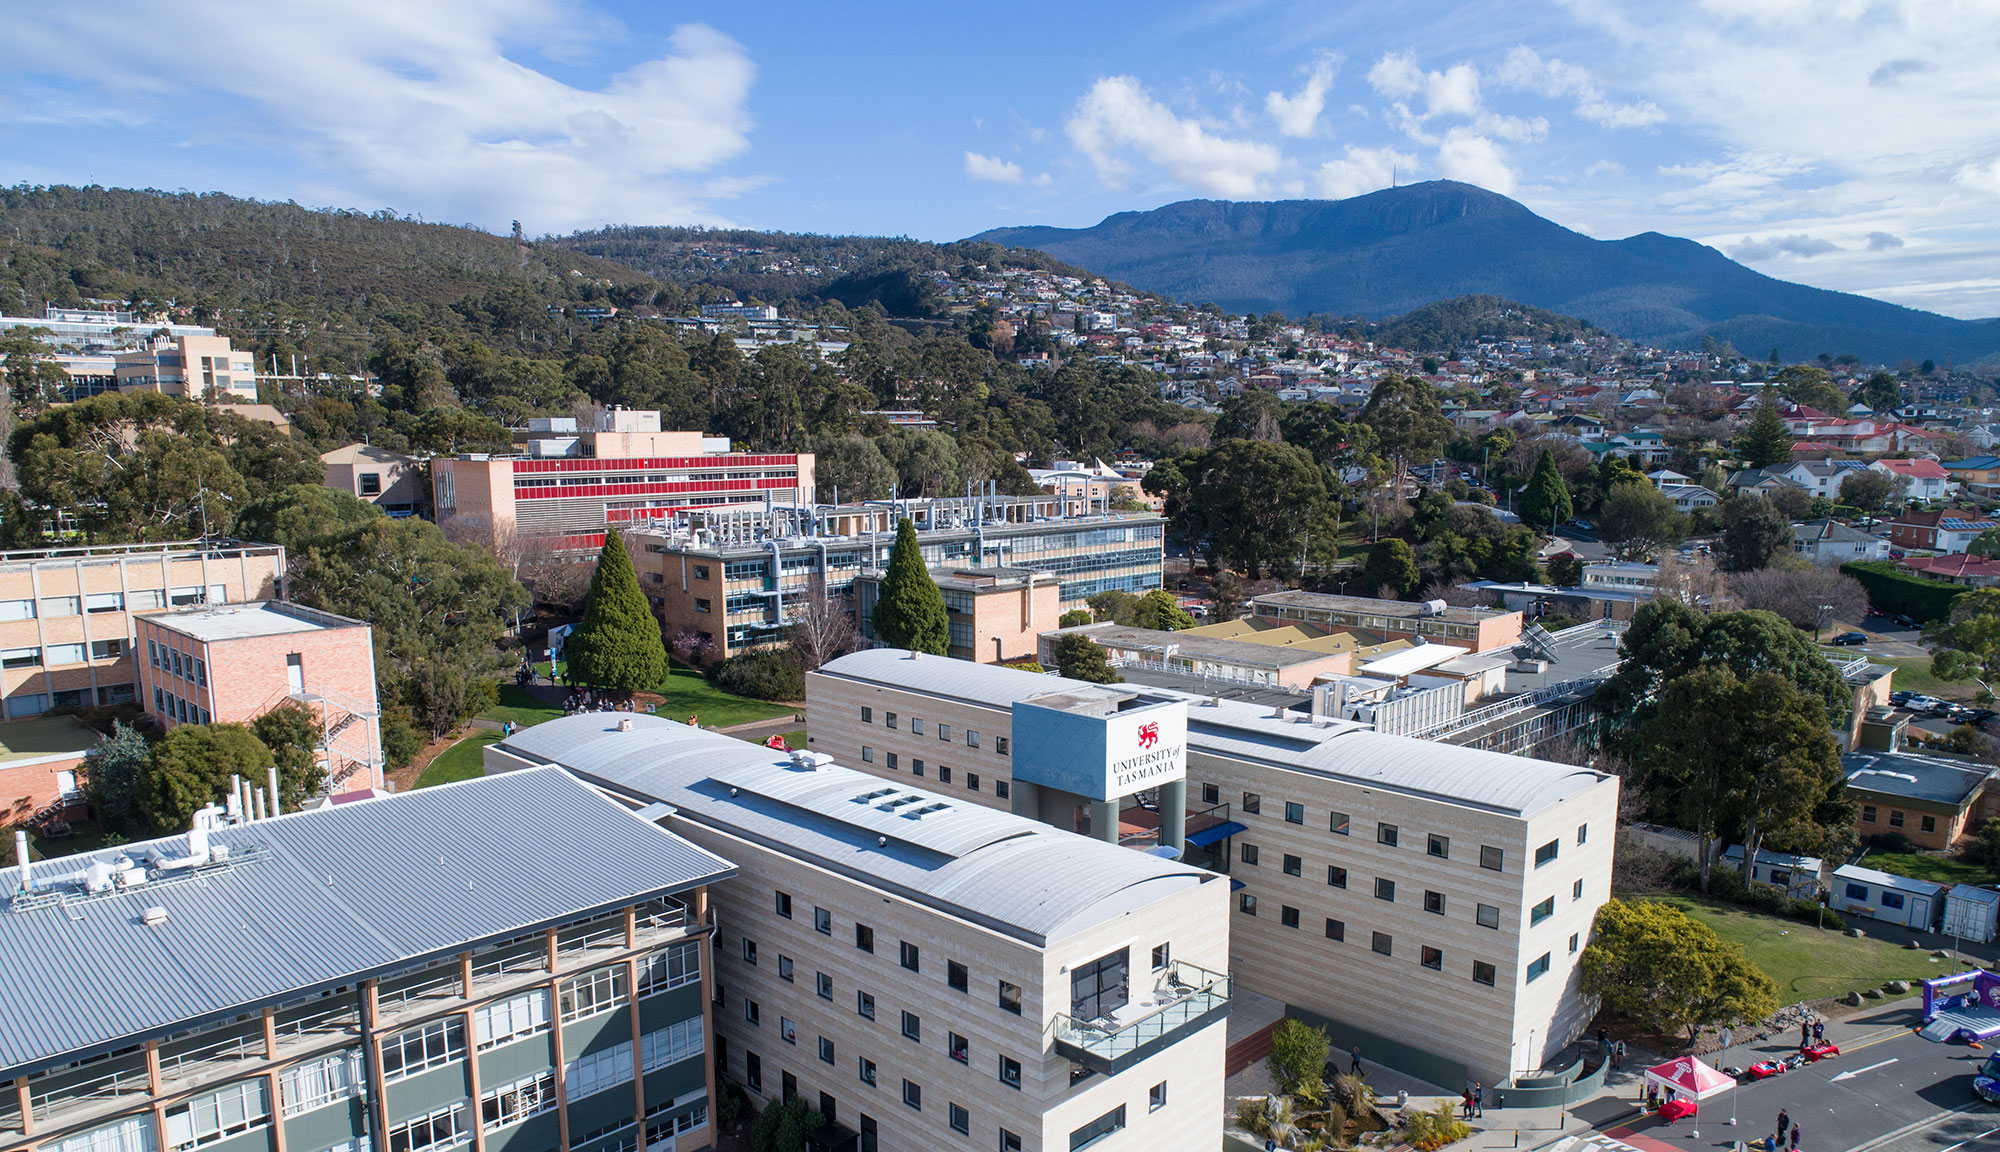 University of Tasmania - Sandy Bay (Hobart)